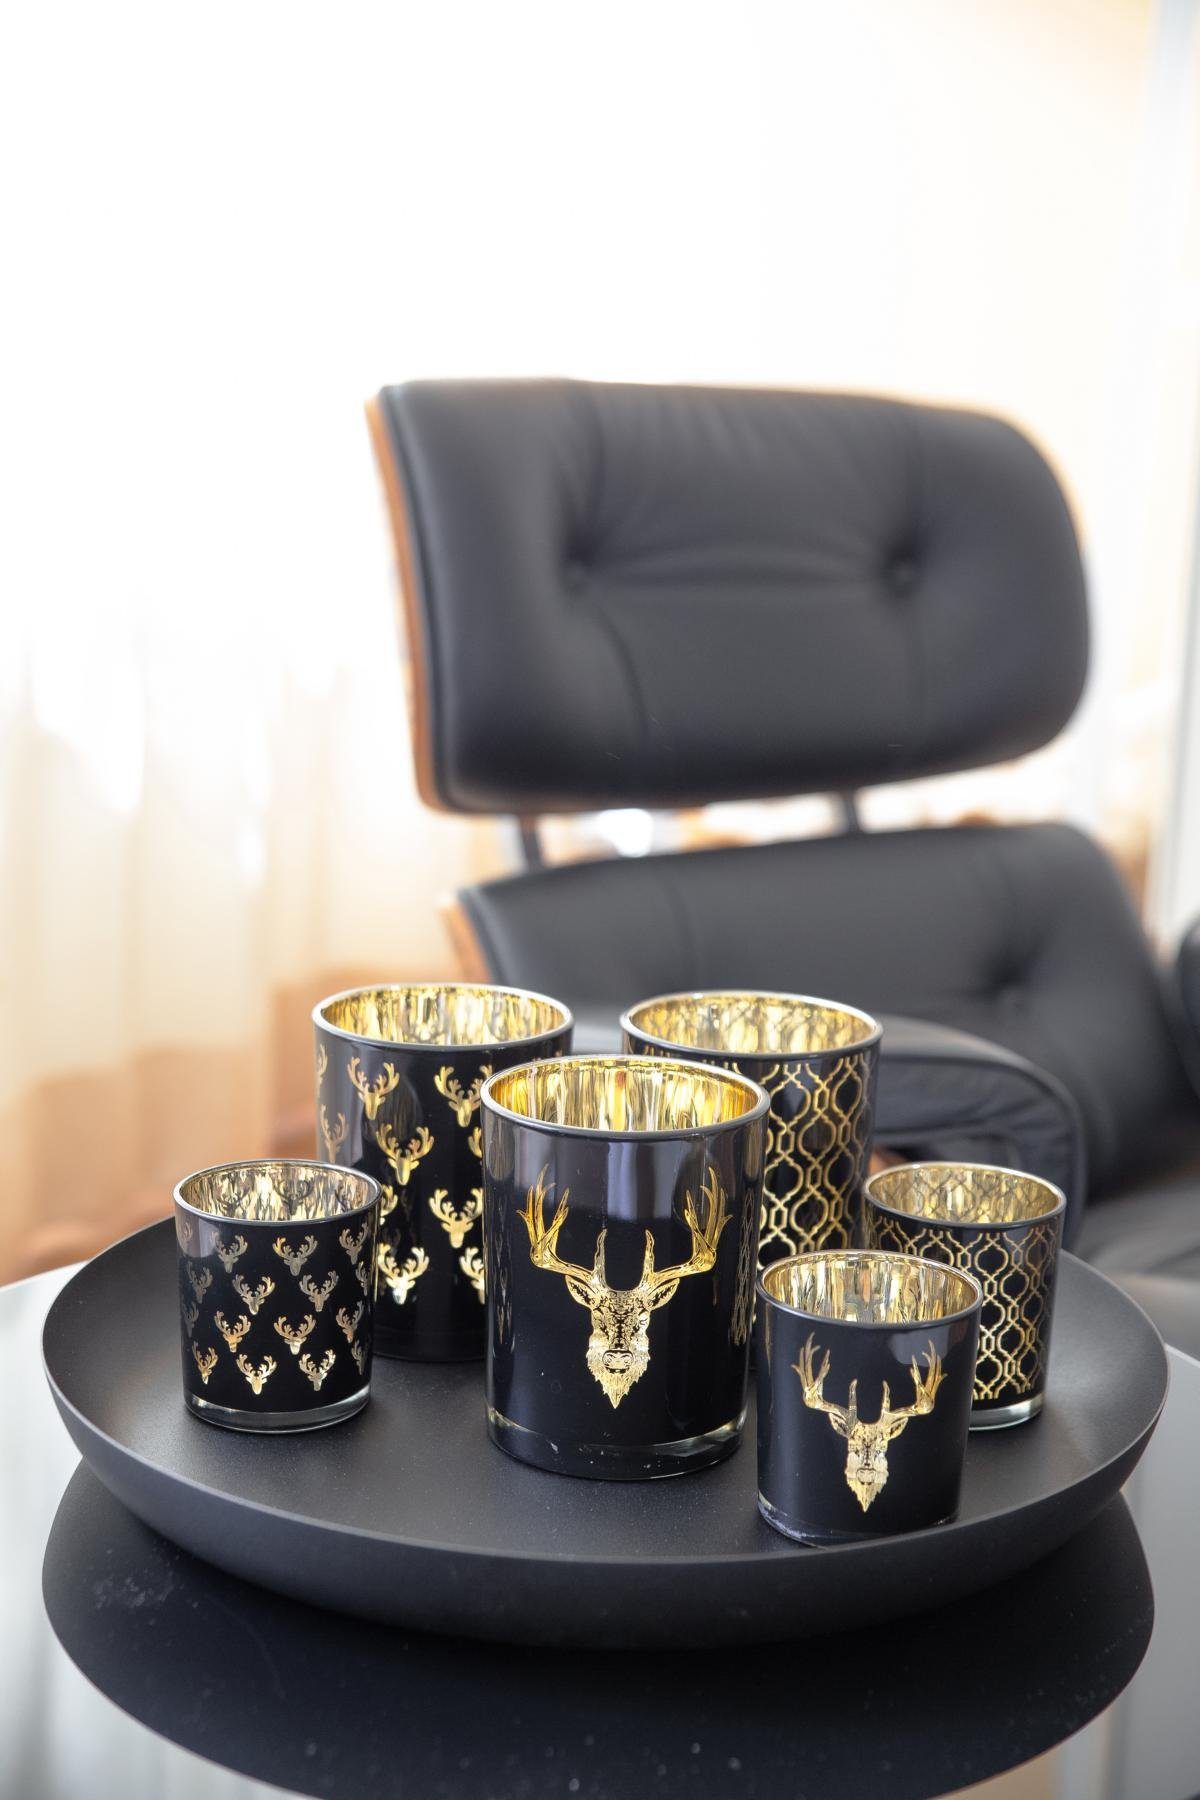 EDZARD Windlicht Raute, Kerzenglas cm Ø in 13 Teelichtglas Höhe mit Gold-Optik, cm, für 10 Teelichter, Rauten-Motiv